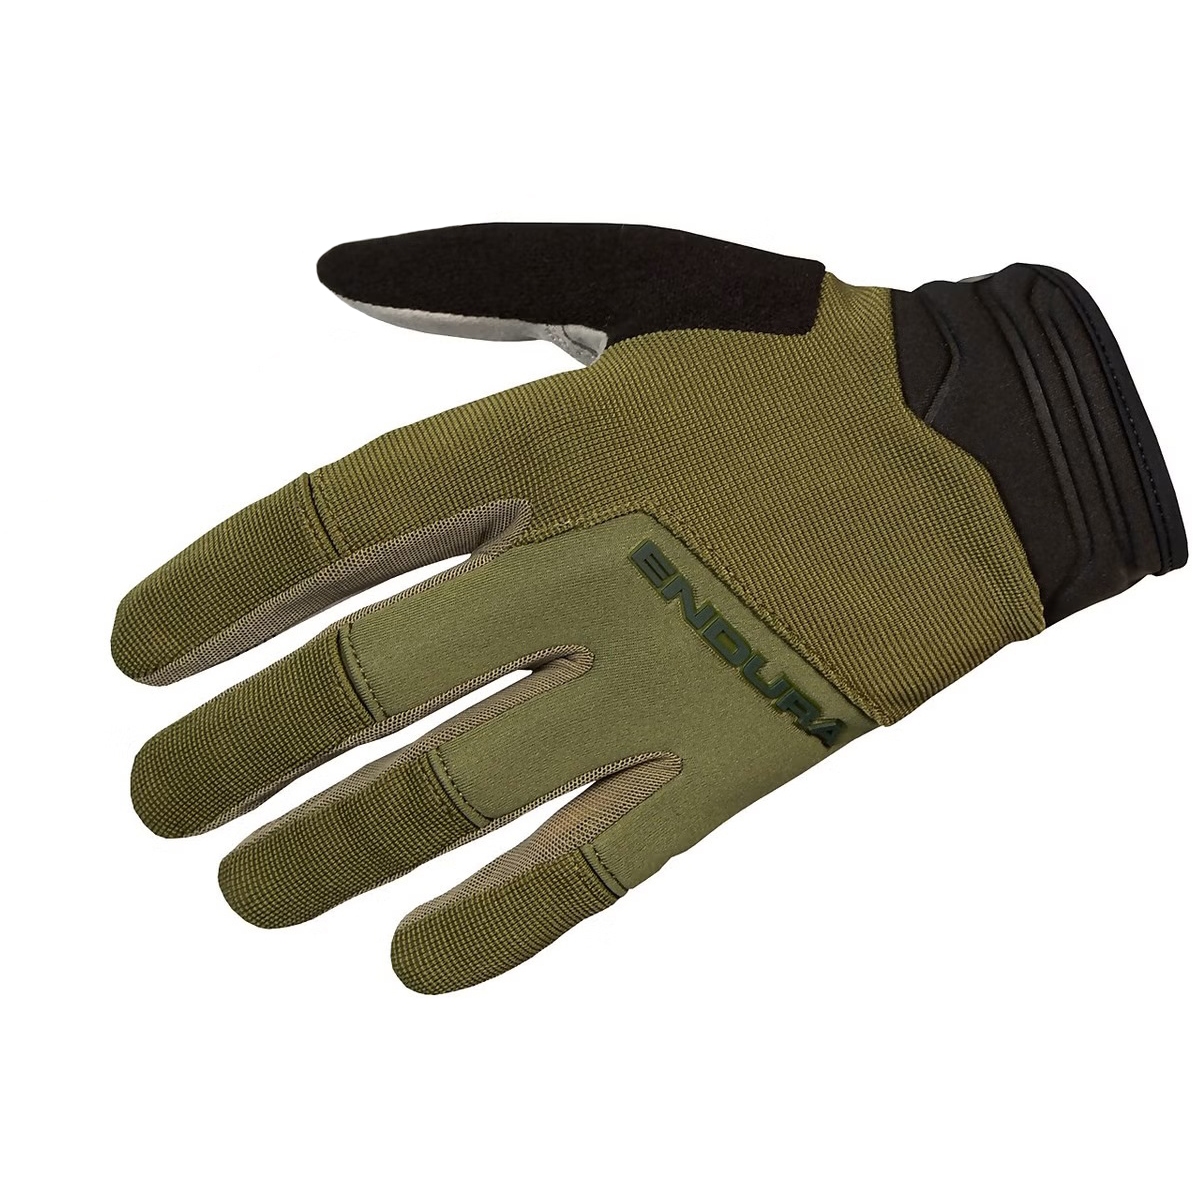 Produktbild von Endura Hummvee Plus II Vollfinger-Handschuhe - olivgrün